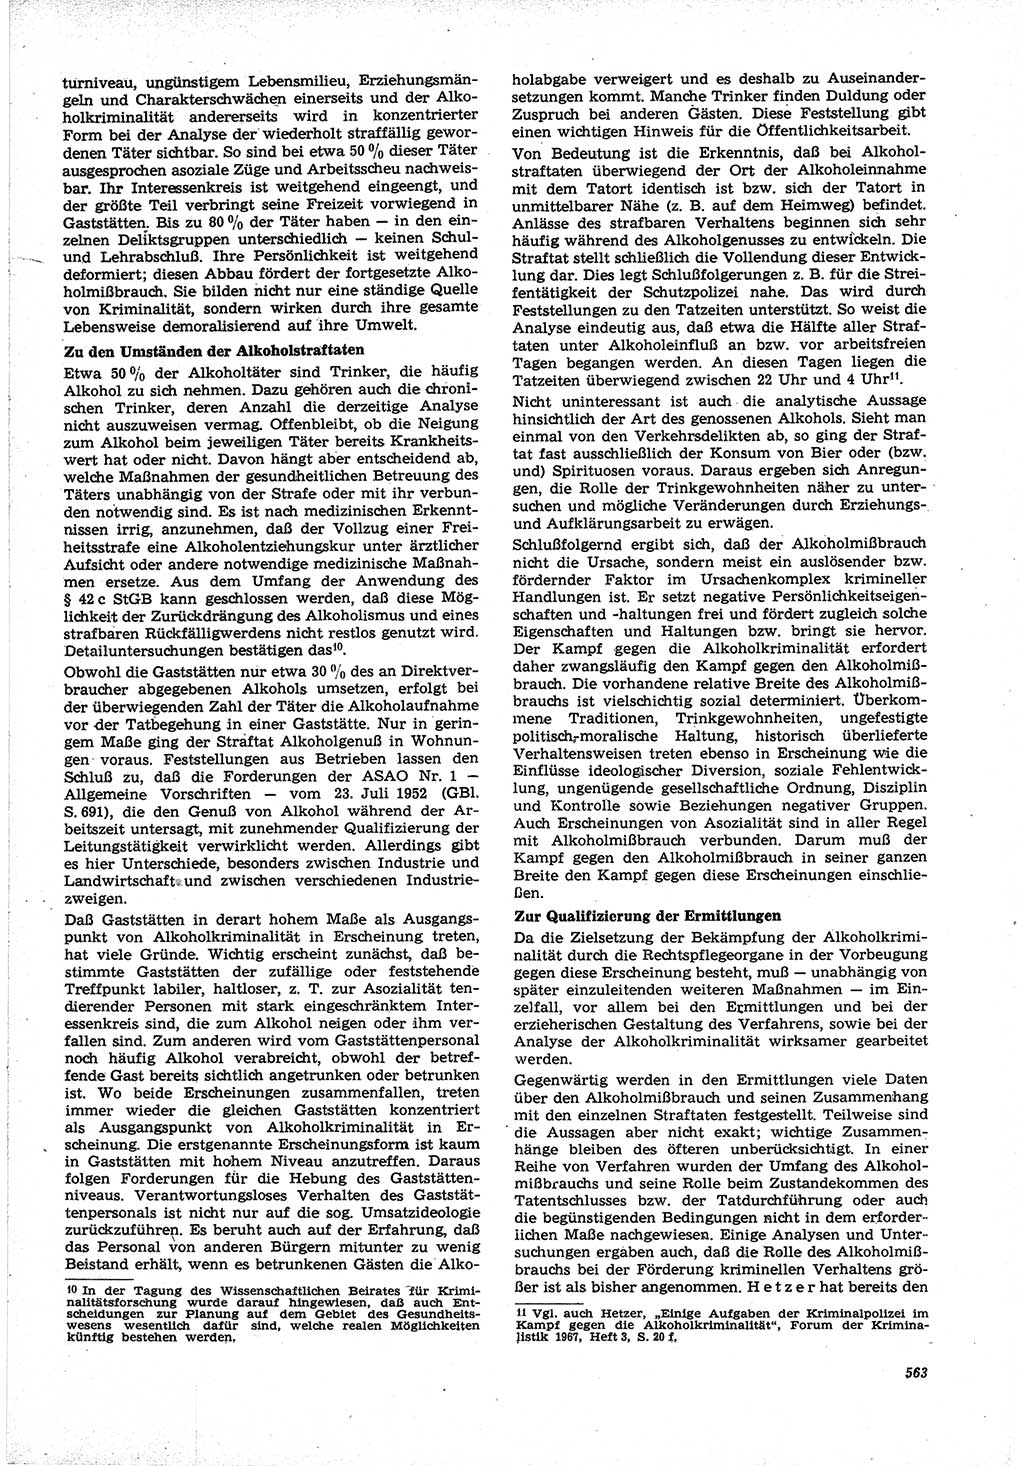 Neue Justiz (NJ), Zeitschrift für Recht und Rechtswissenschaft [Deutsche Demokratische Republik (DDR)], 21. Jahrgang 1967, Seite 563 (NJ DDR 1967, S. 563)